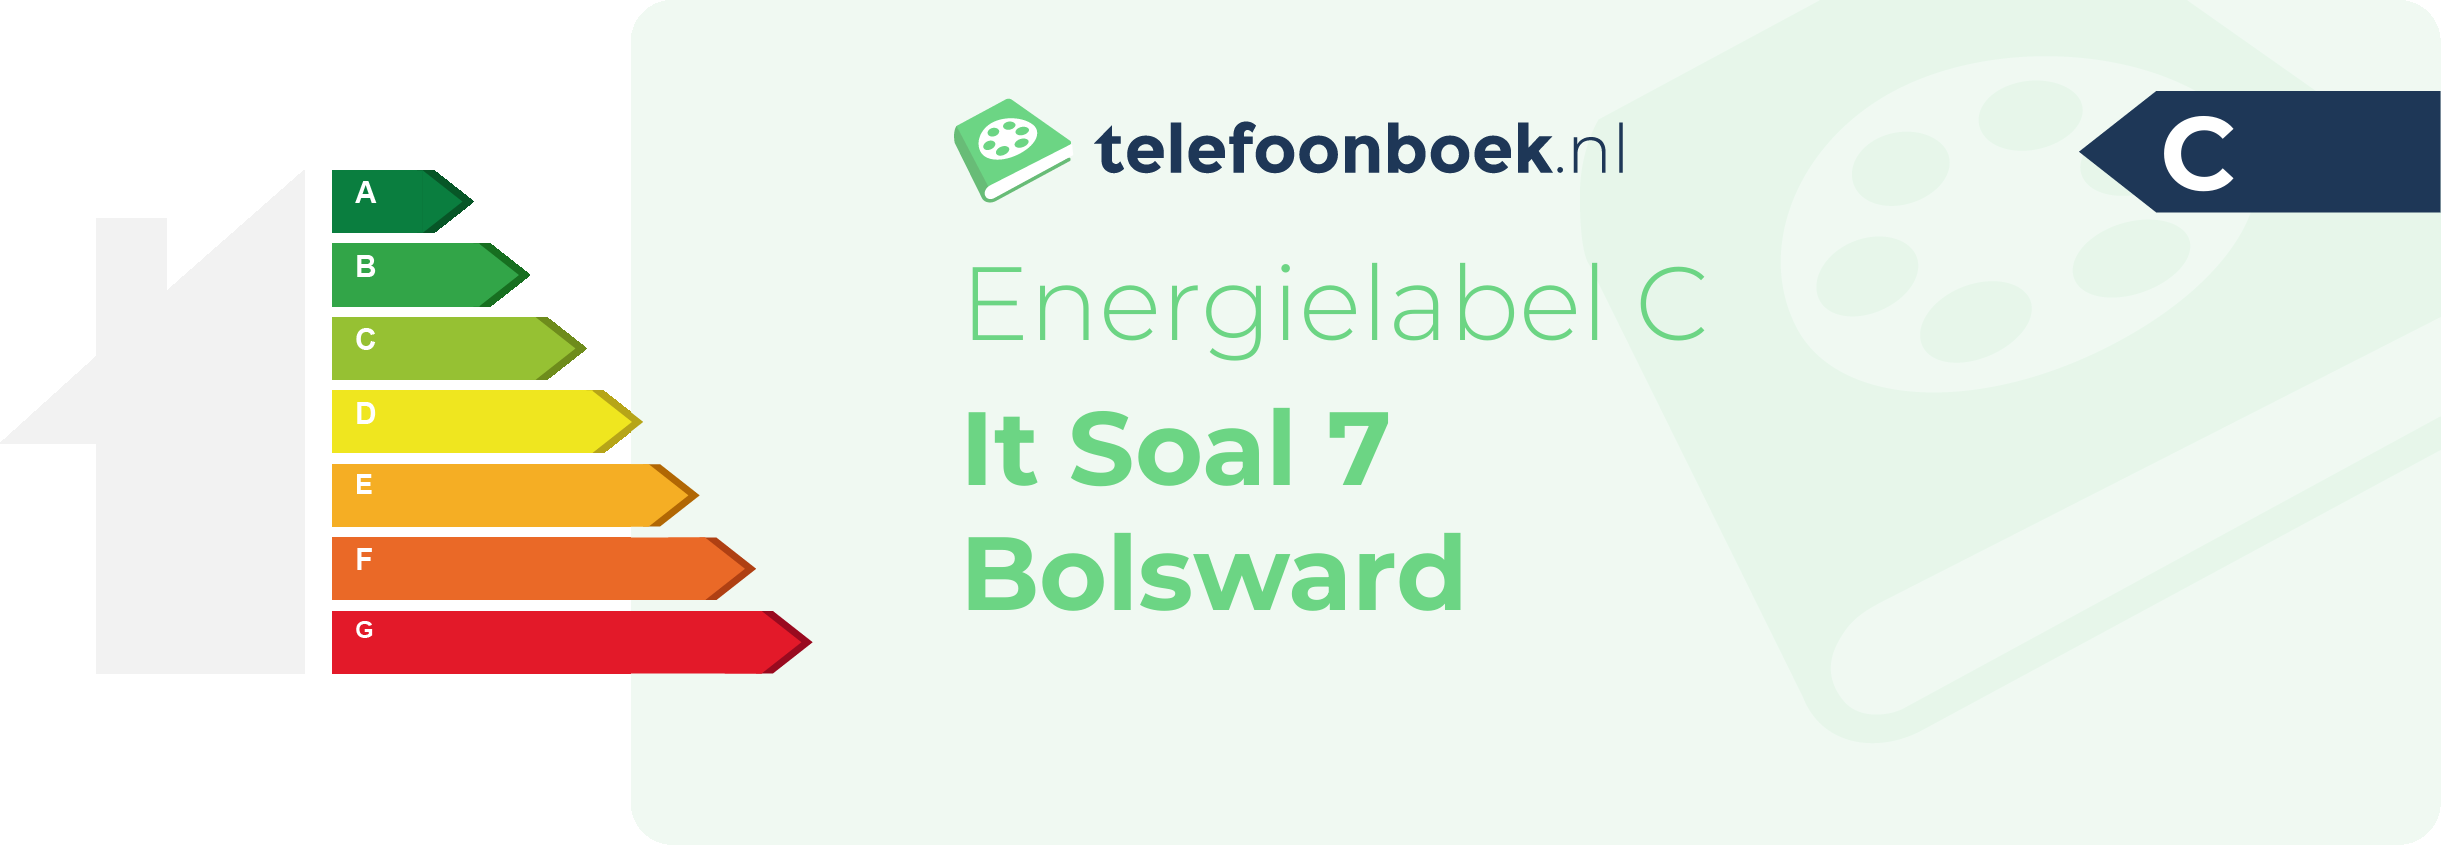 Energielabel It Soal 7 Bolsward